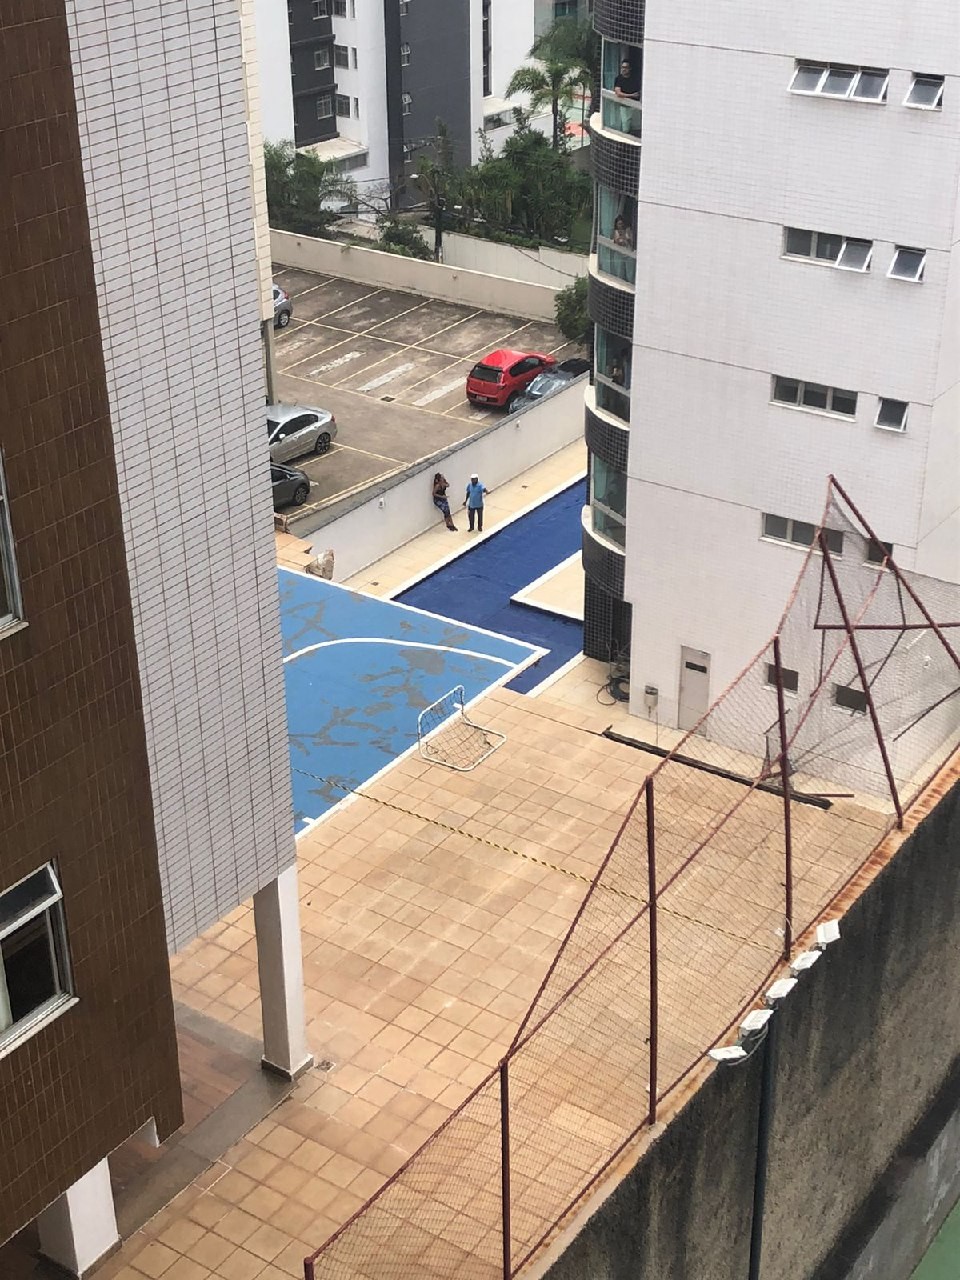 Parte de área de lazer de prédio residencial volta a desabar no bairro Buritis, em Belo Horizonte